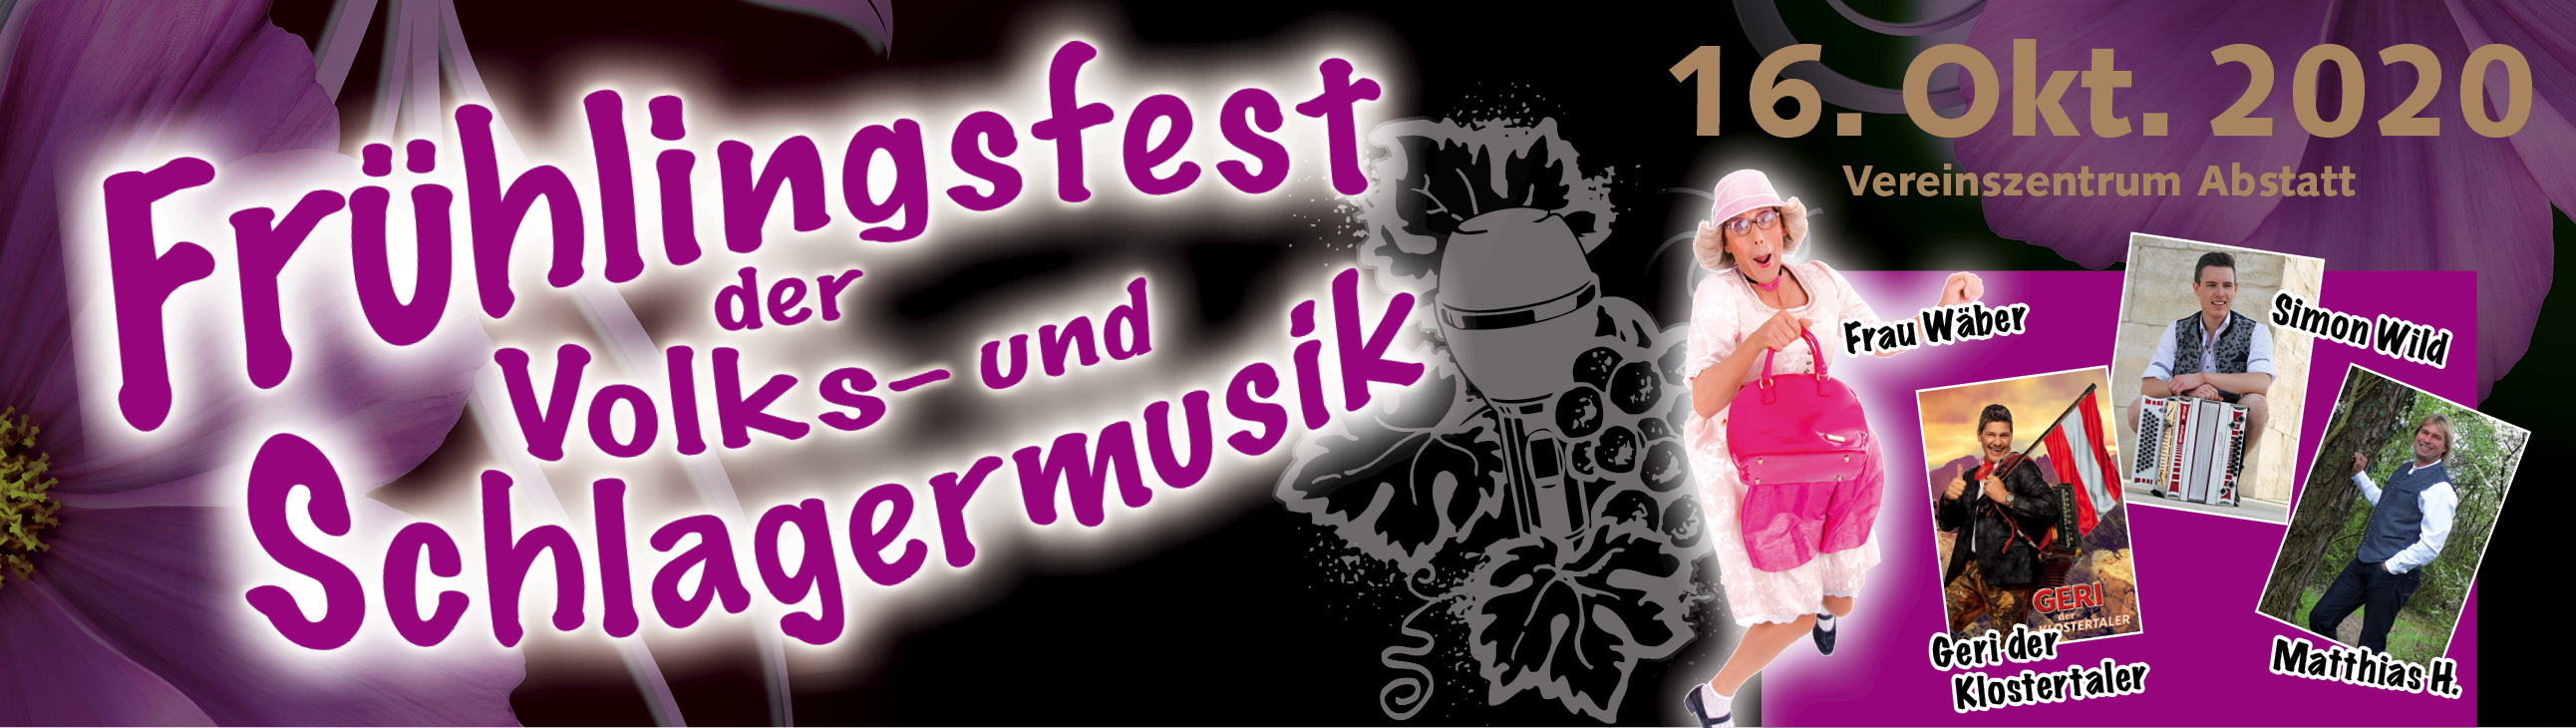 Frühlingsfest der Volks-und Schlagermusik Abstatt am 16. Oktober 2020 - Jetzt tickets kaufen